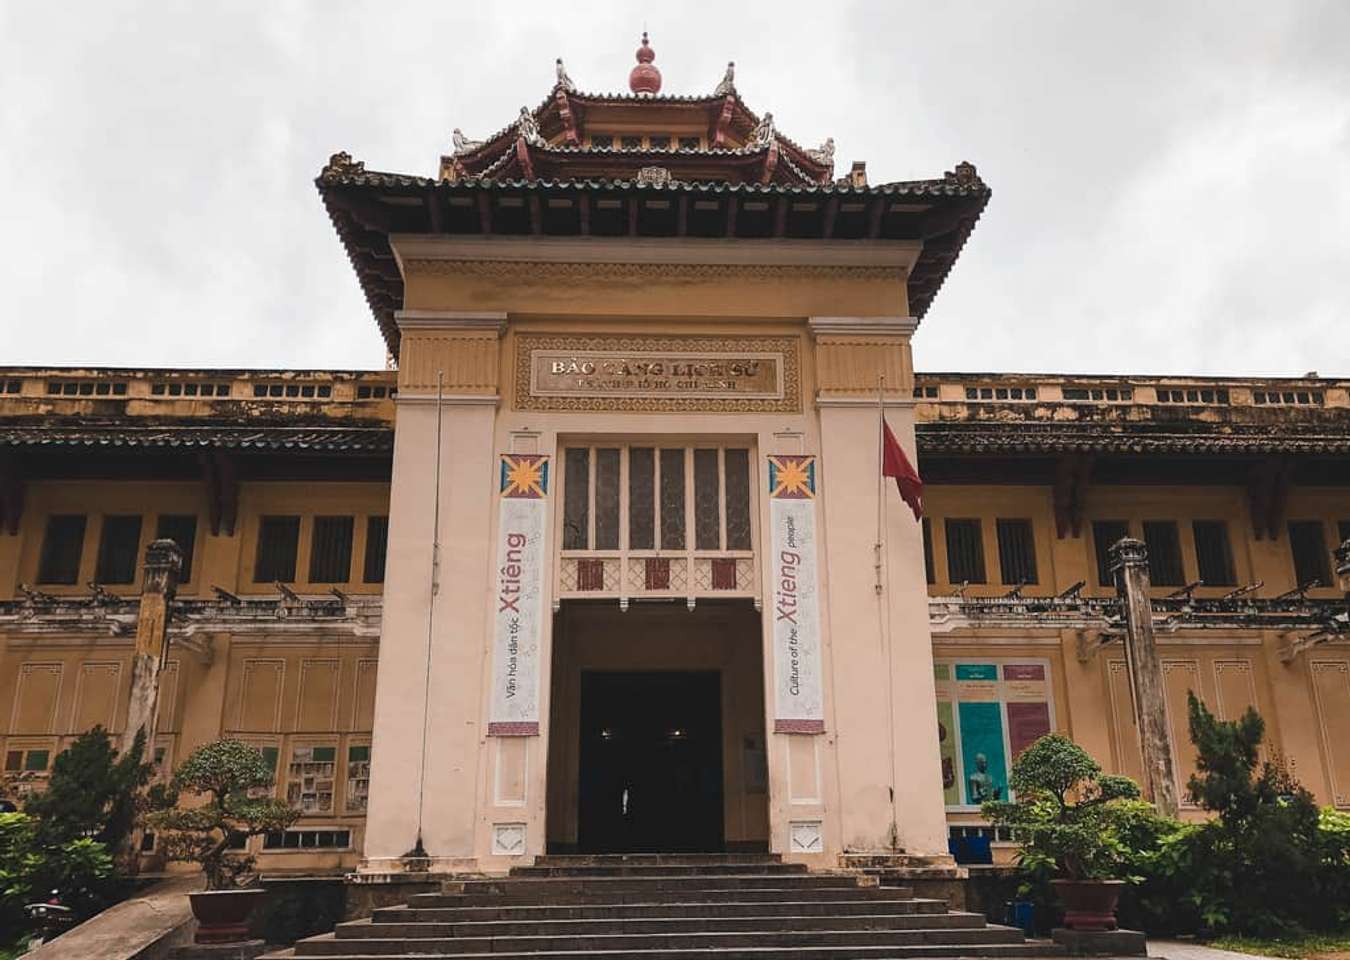 Khám phá Bảo tàng Lịch sử Việt Nam, nhớ về những bài học lịch sử ...